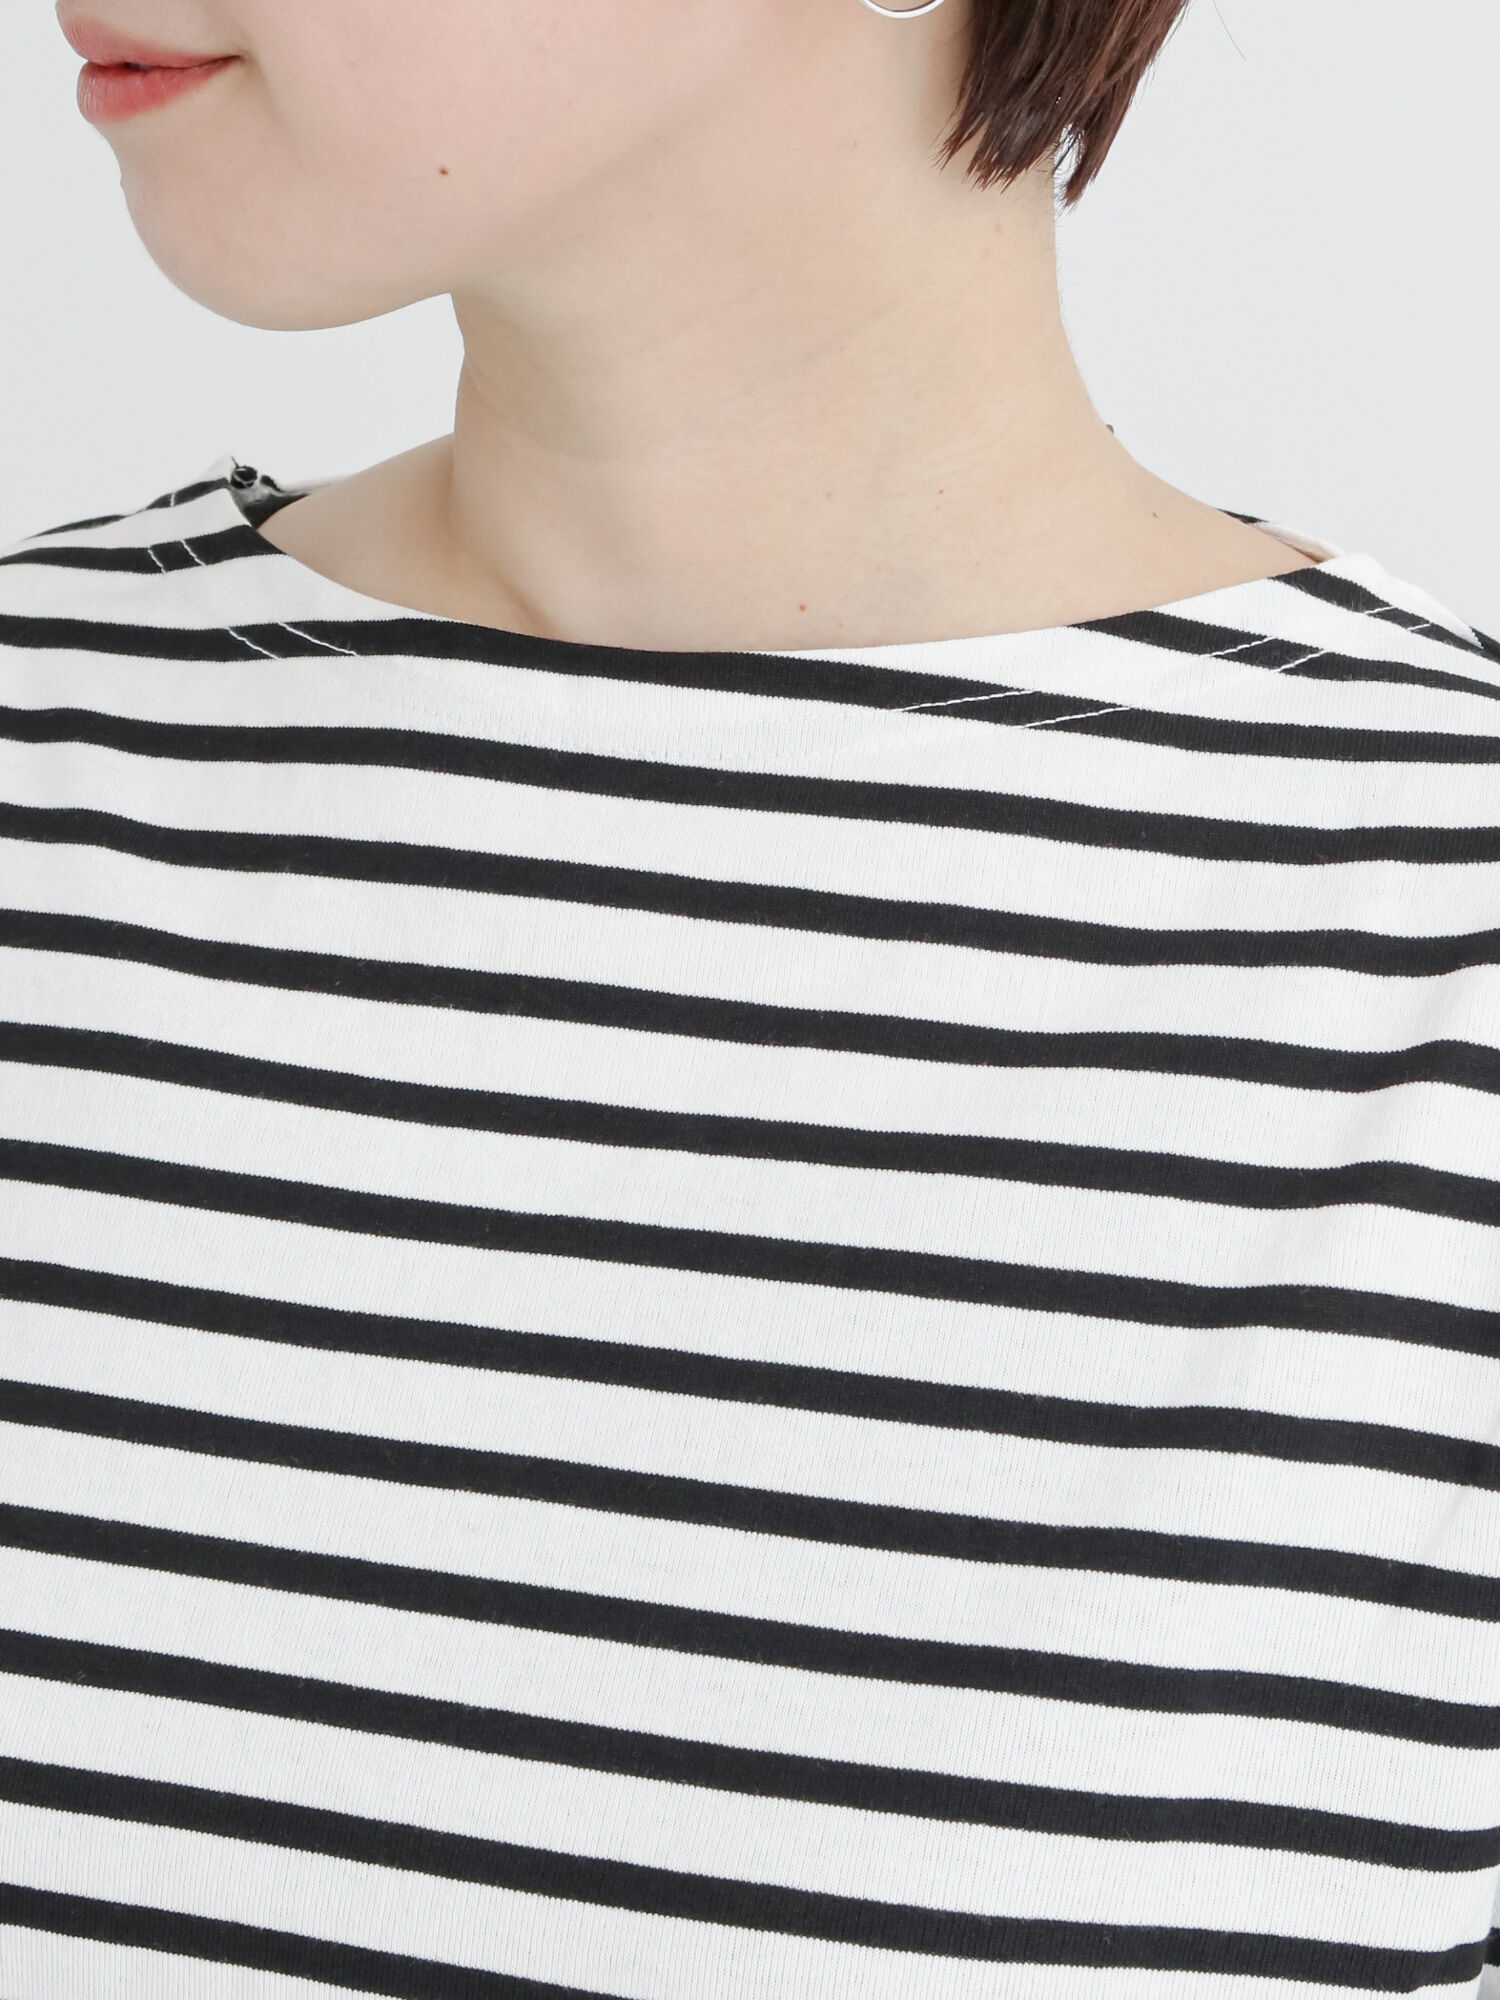 セール バスクボーダーtシャツ オフホワイト ブラック ピンク ブルー トップス Tシャツ Lugnoncure ルノンキュール 公式通販